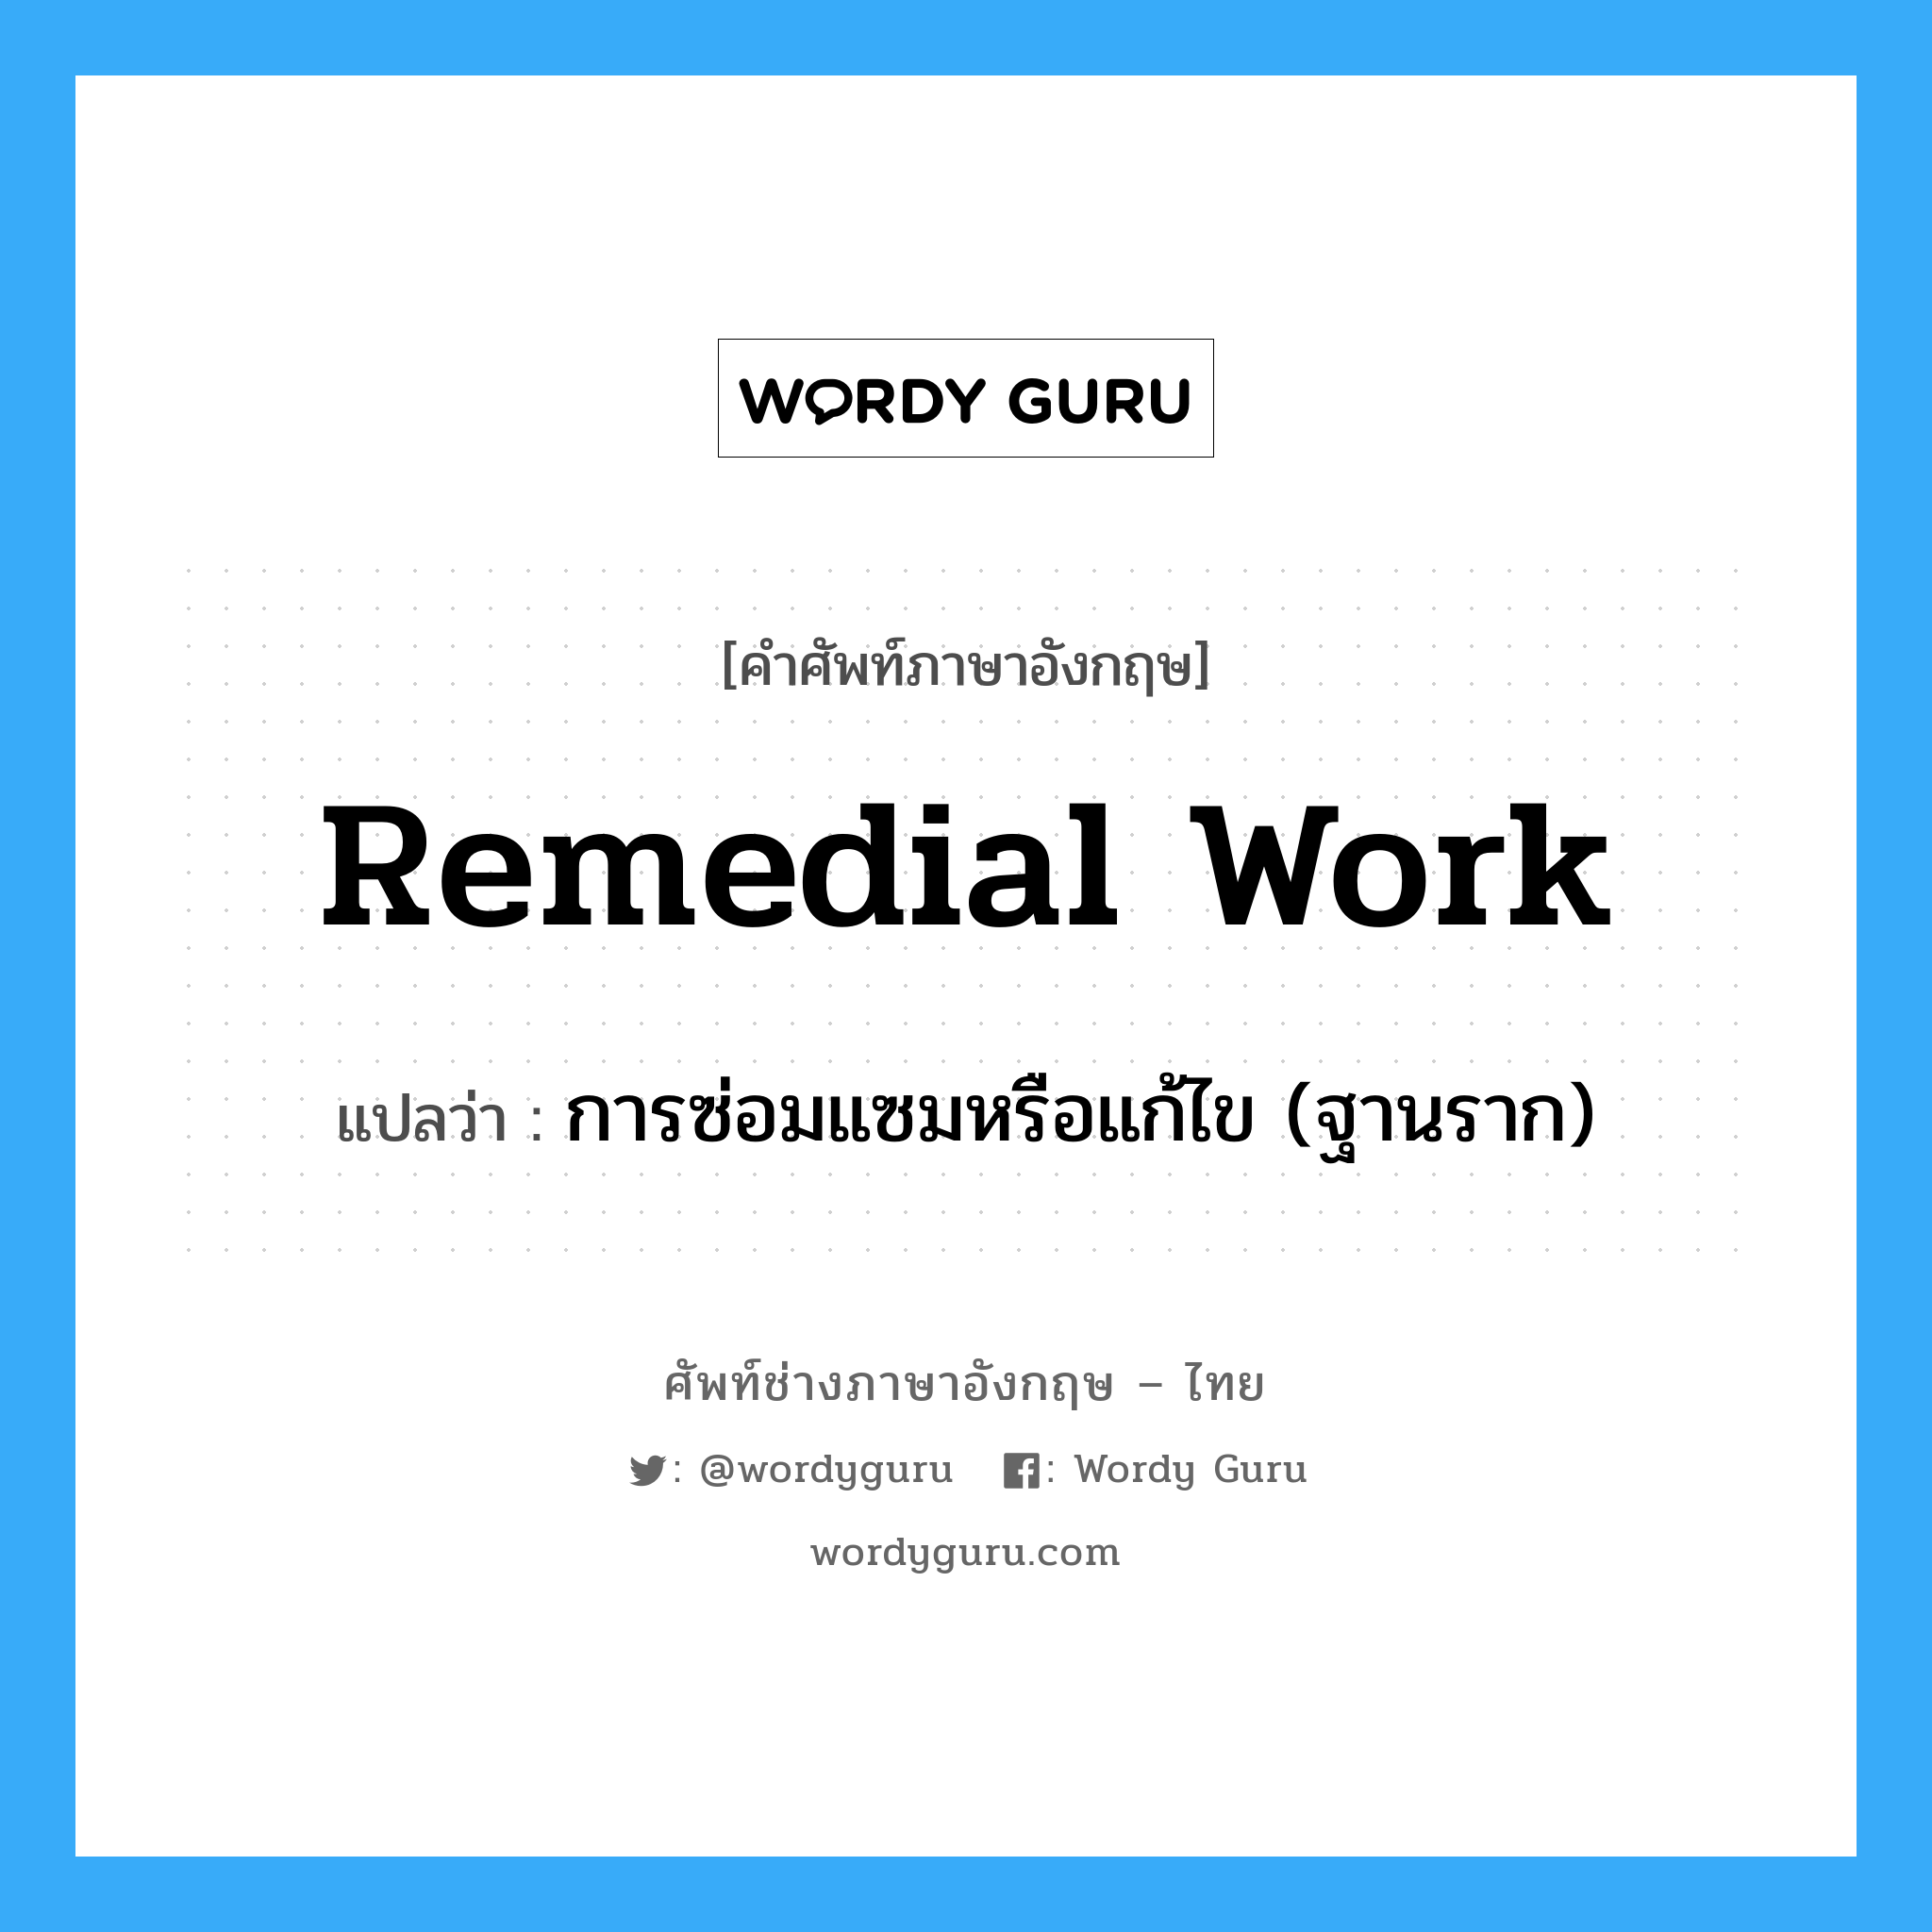 remedial work แปลว่า?, คำศัพท์ช่างภาษาอังกฤษ - ไทย remedial work คำศัพท์ภาษาอังกฤษ remedial work แปลว่า การซ่อมแซมหรือแก้ไข (ฐานราก)